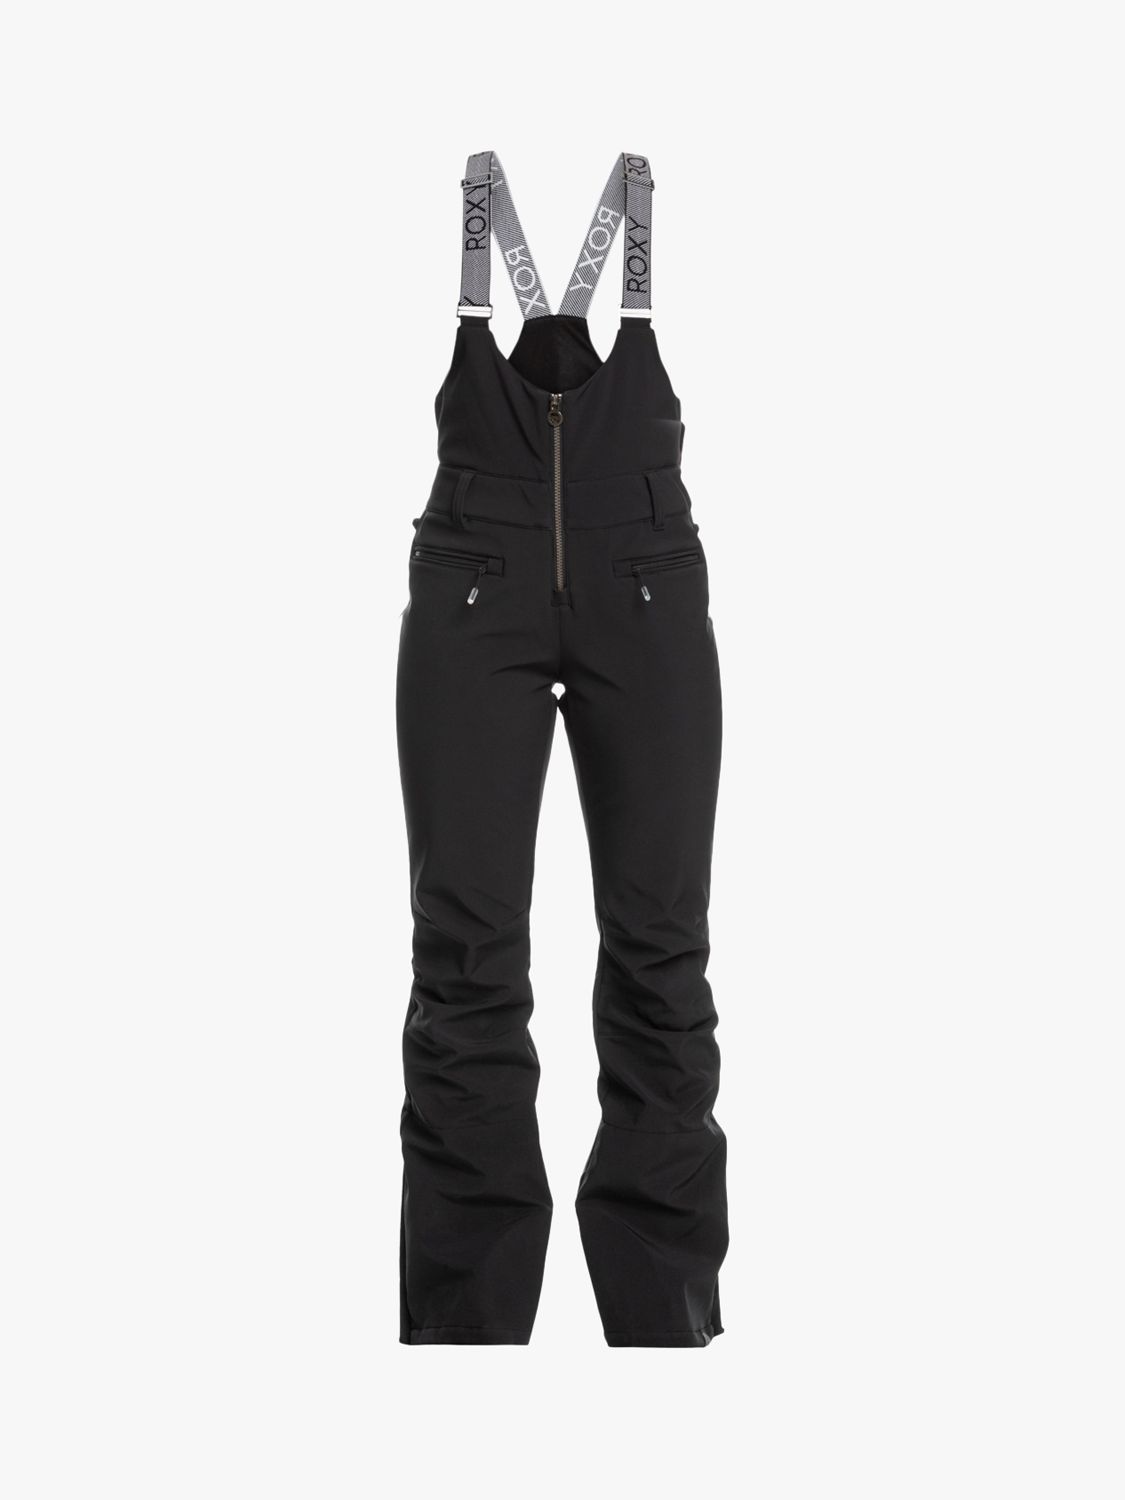 Roxy Technical Snow Bib Ski Trousers, True Black, S